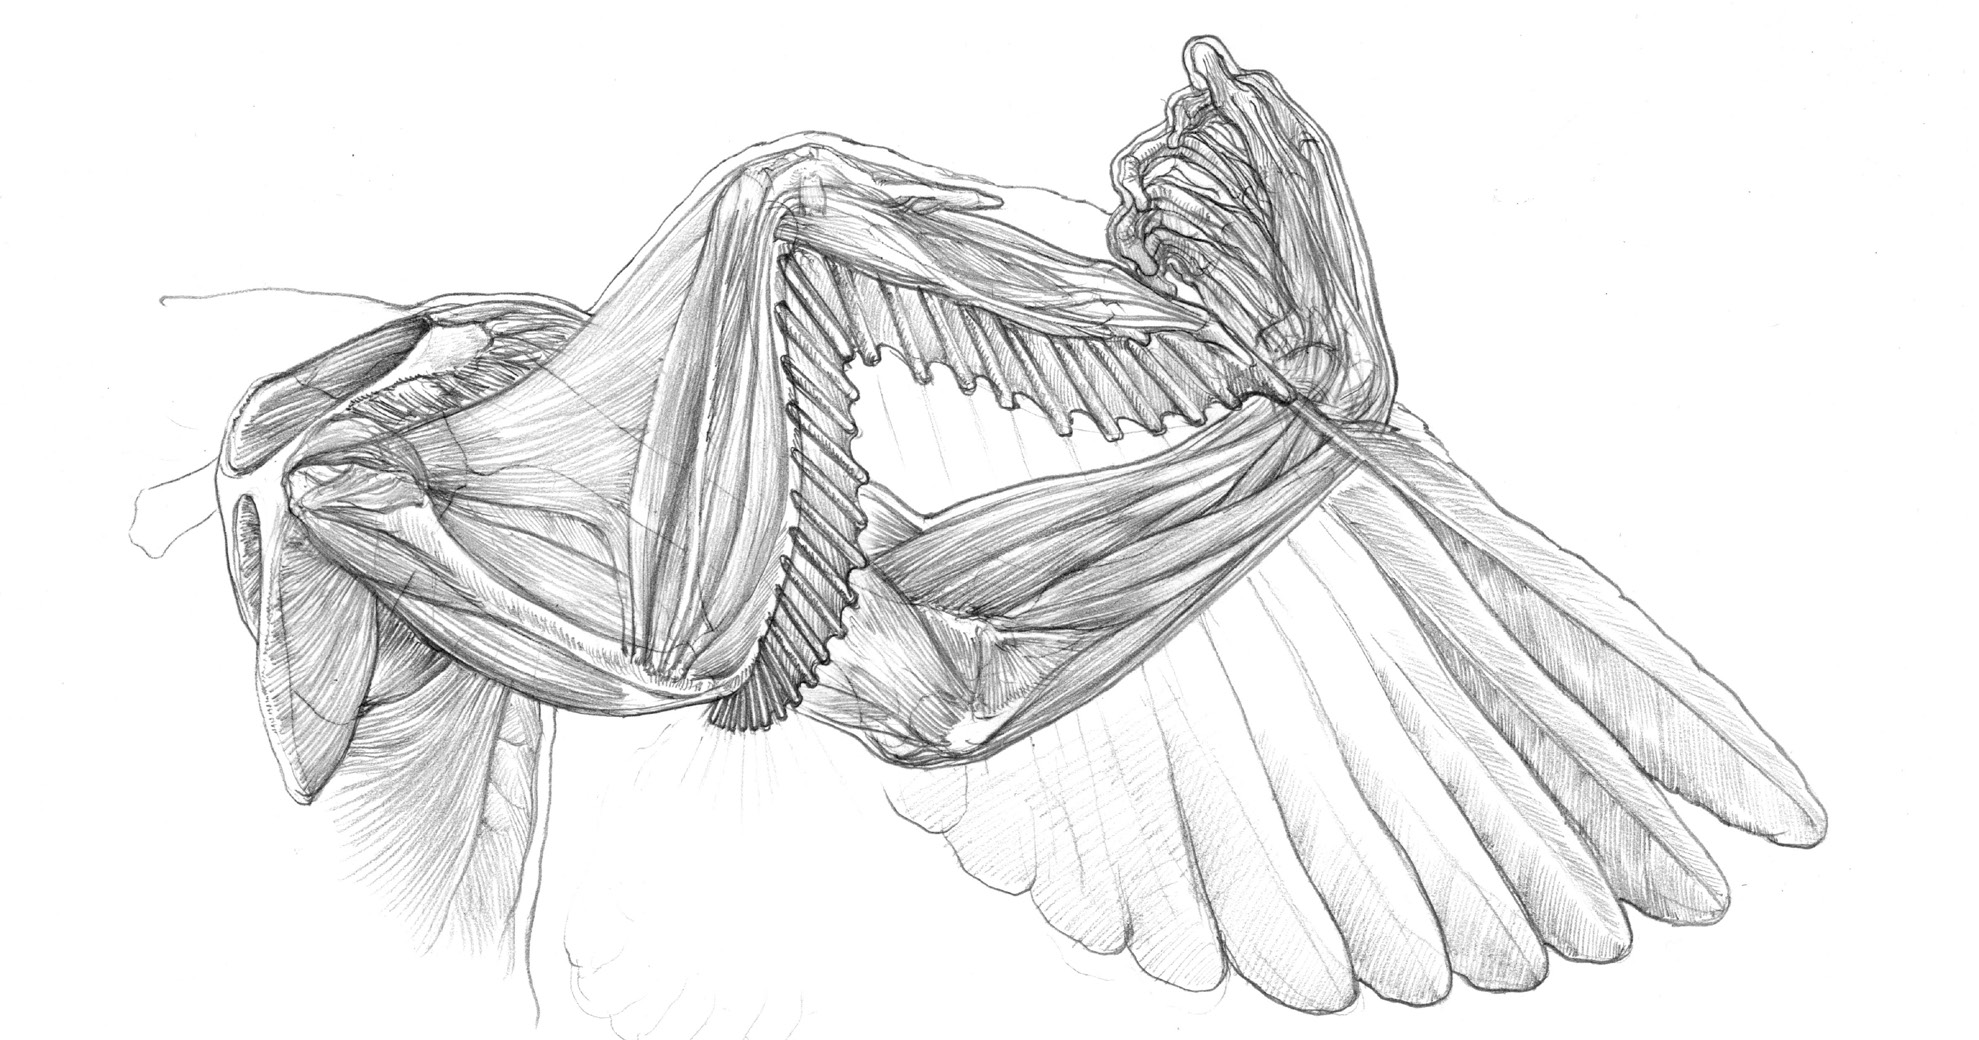 人体に翼を生やすことは可能か キューピッドを美術解剖図で考察する 美しい美術解剖図 第2回 Pictures